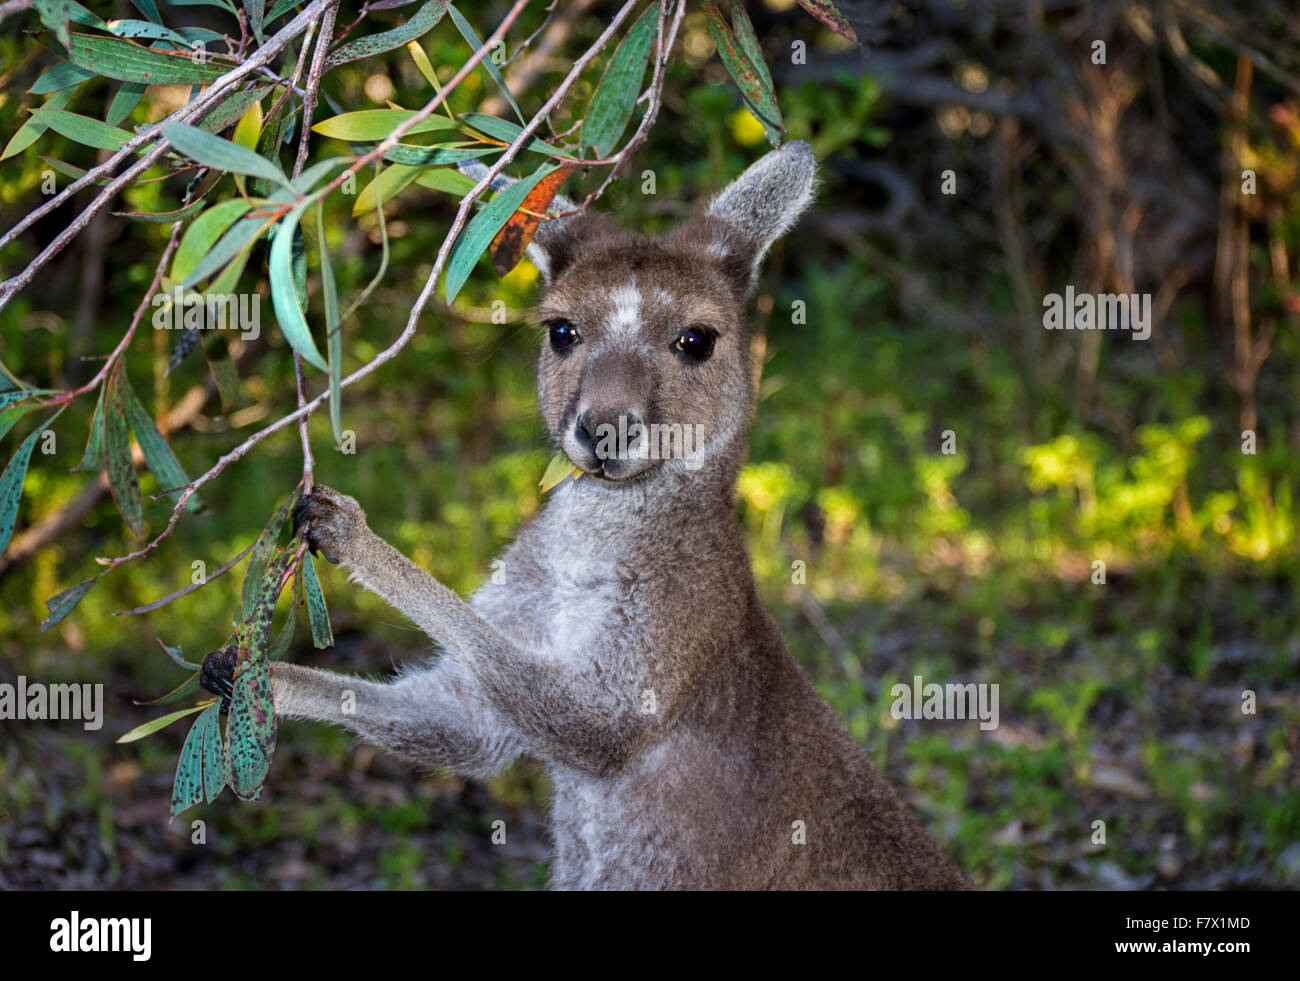 Kangourou gris manger les feuilles, de l'Australie Banque D'Images